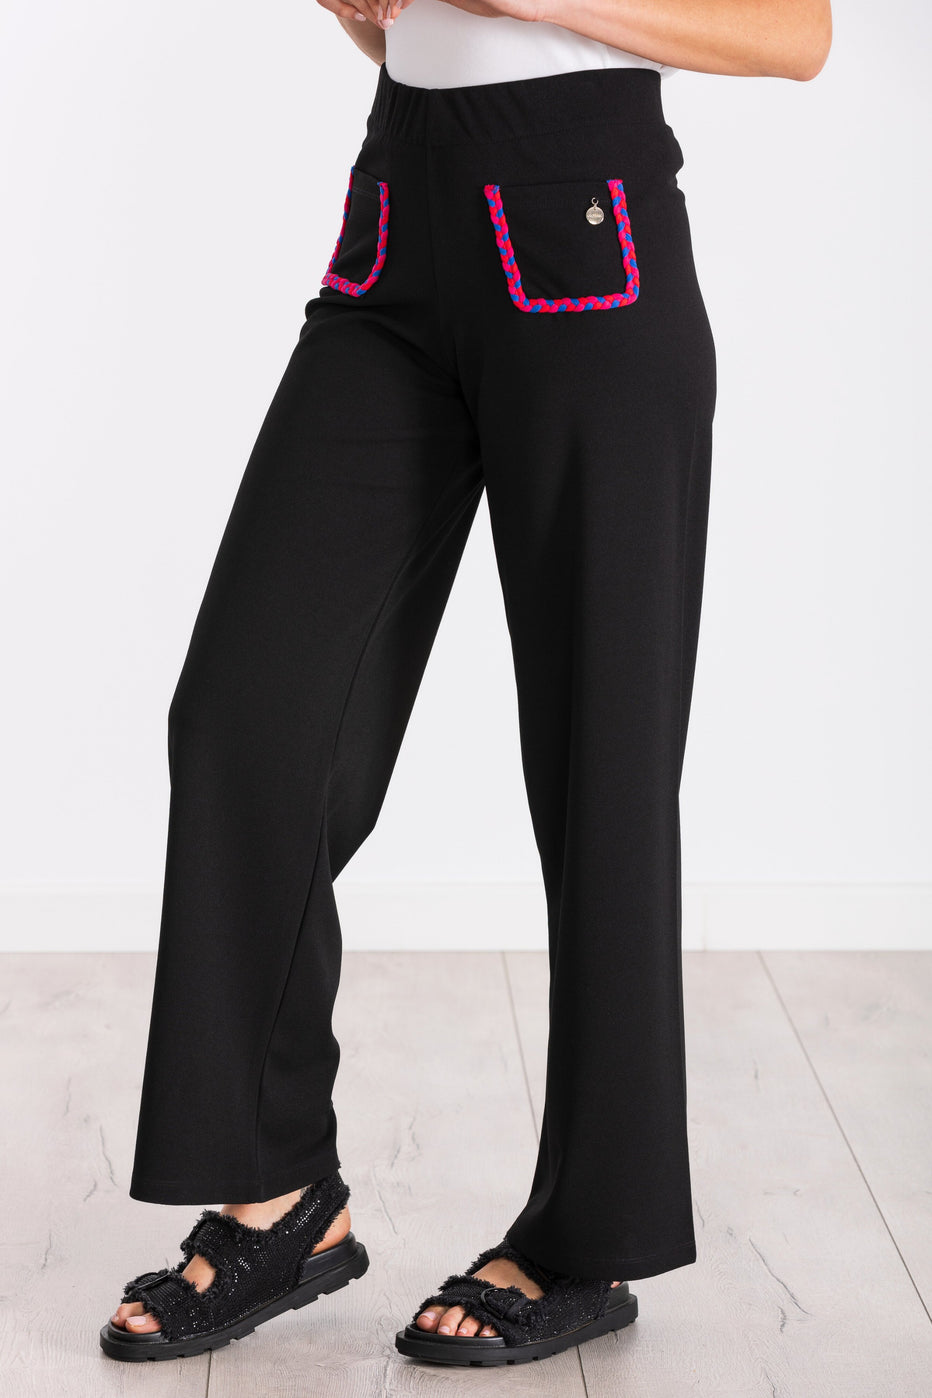 Pantalon negro ancho con bolsillos trenzados fucsia LolitasyL - lolitasyl.com